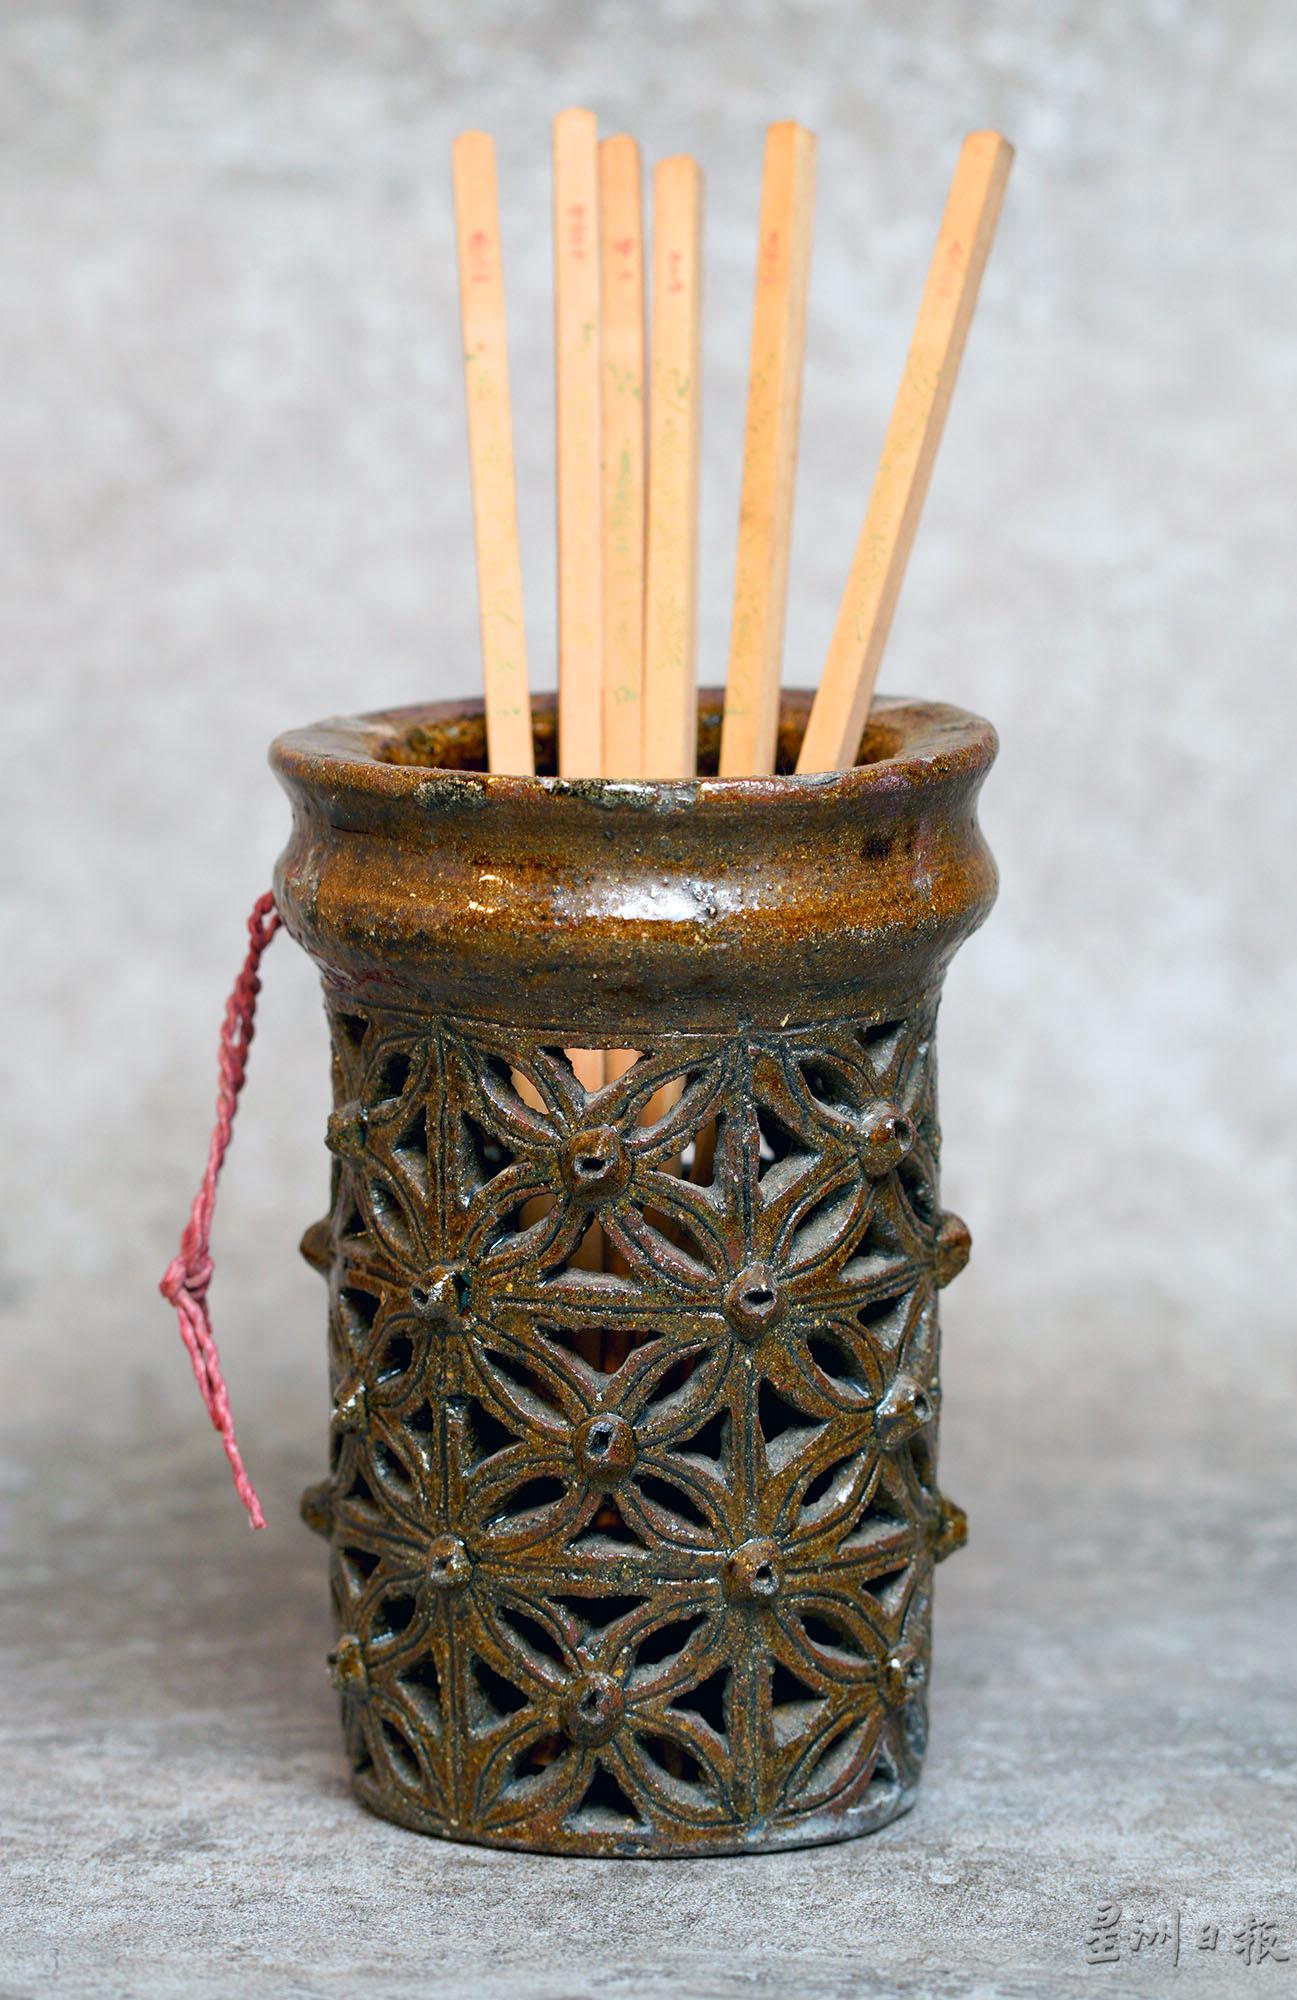 圆筒形筷子筒，花纹雕得细致，让人能细细欣赏。

